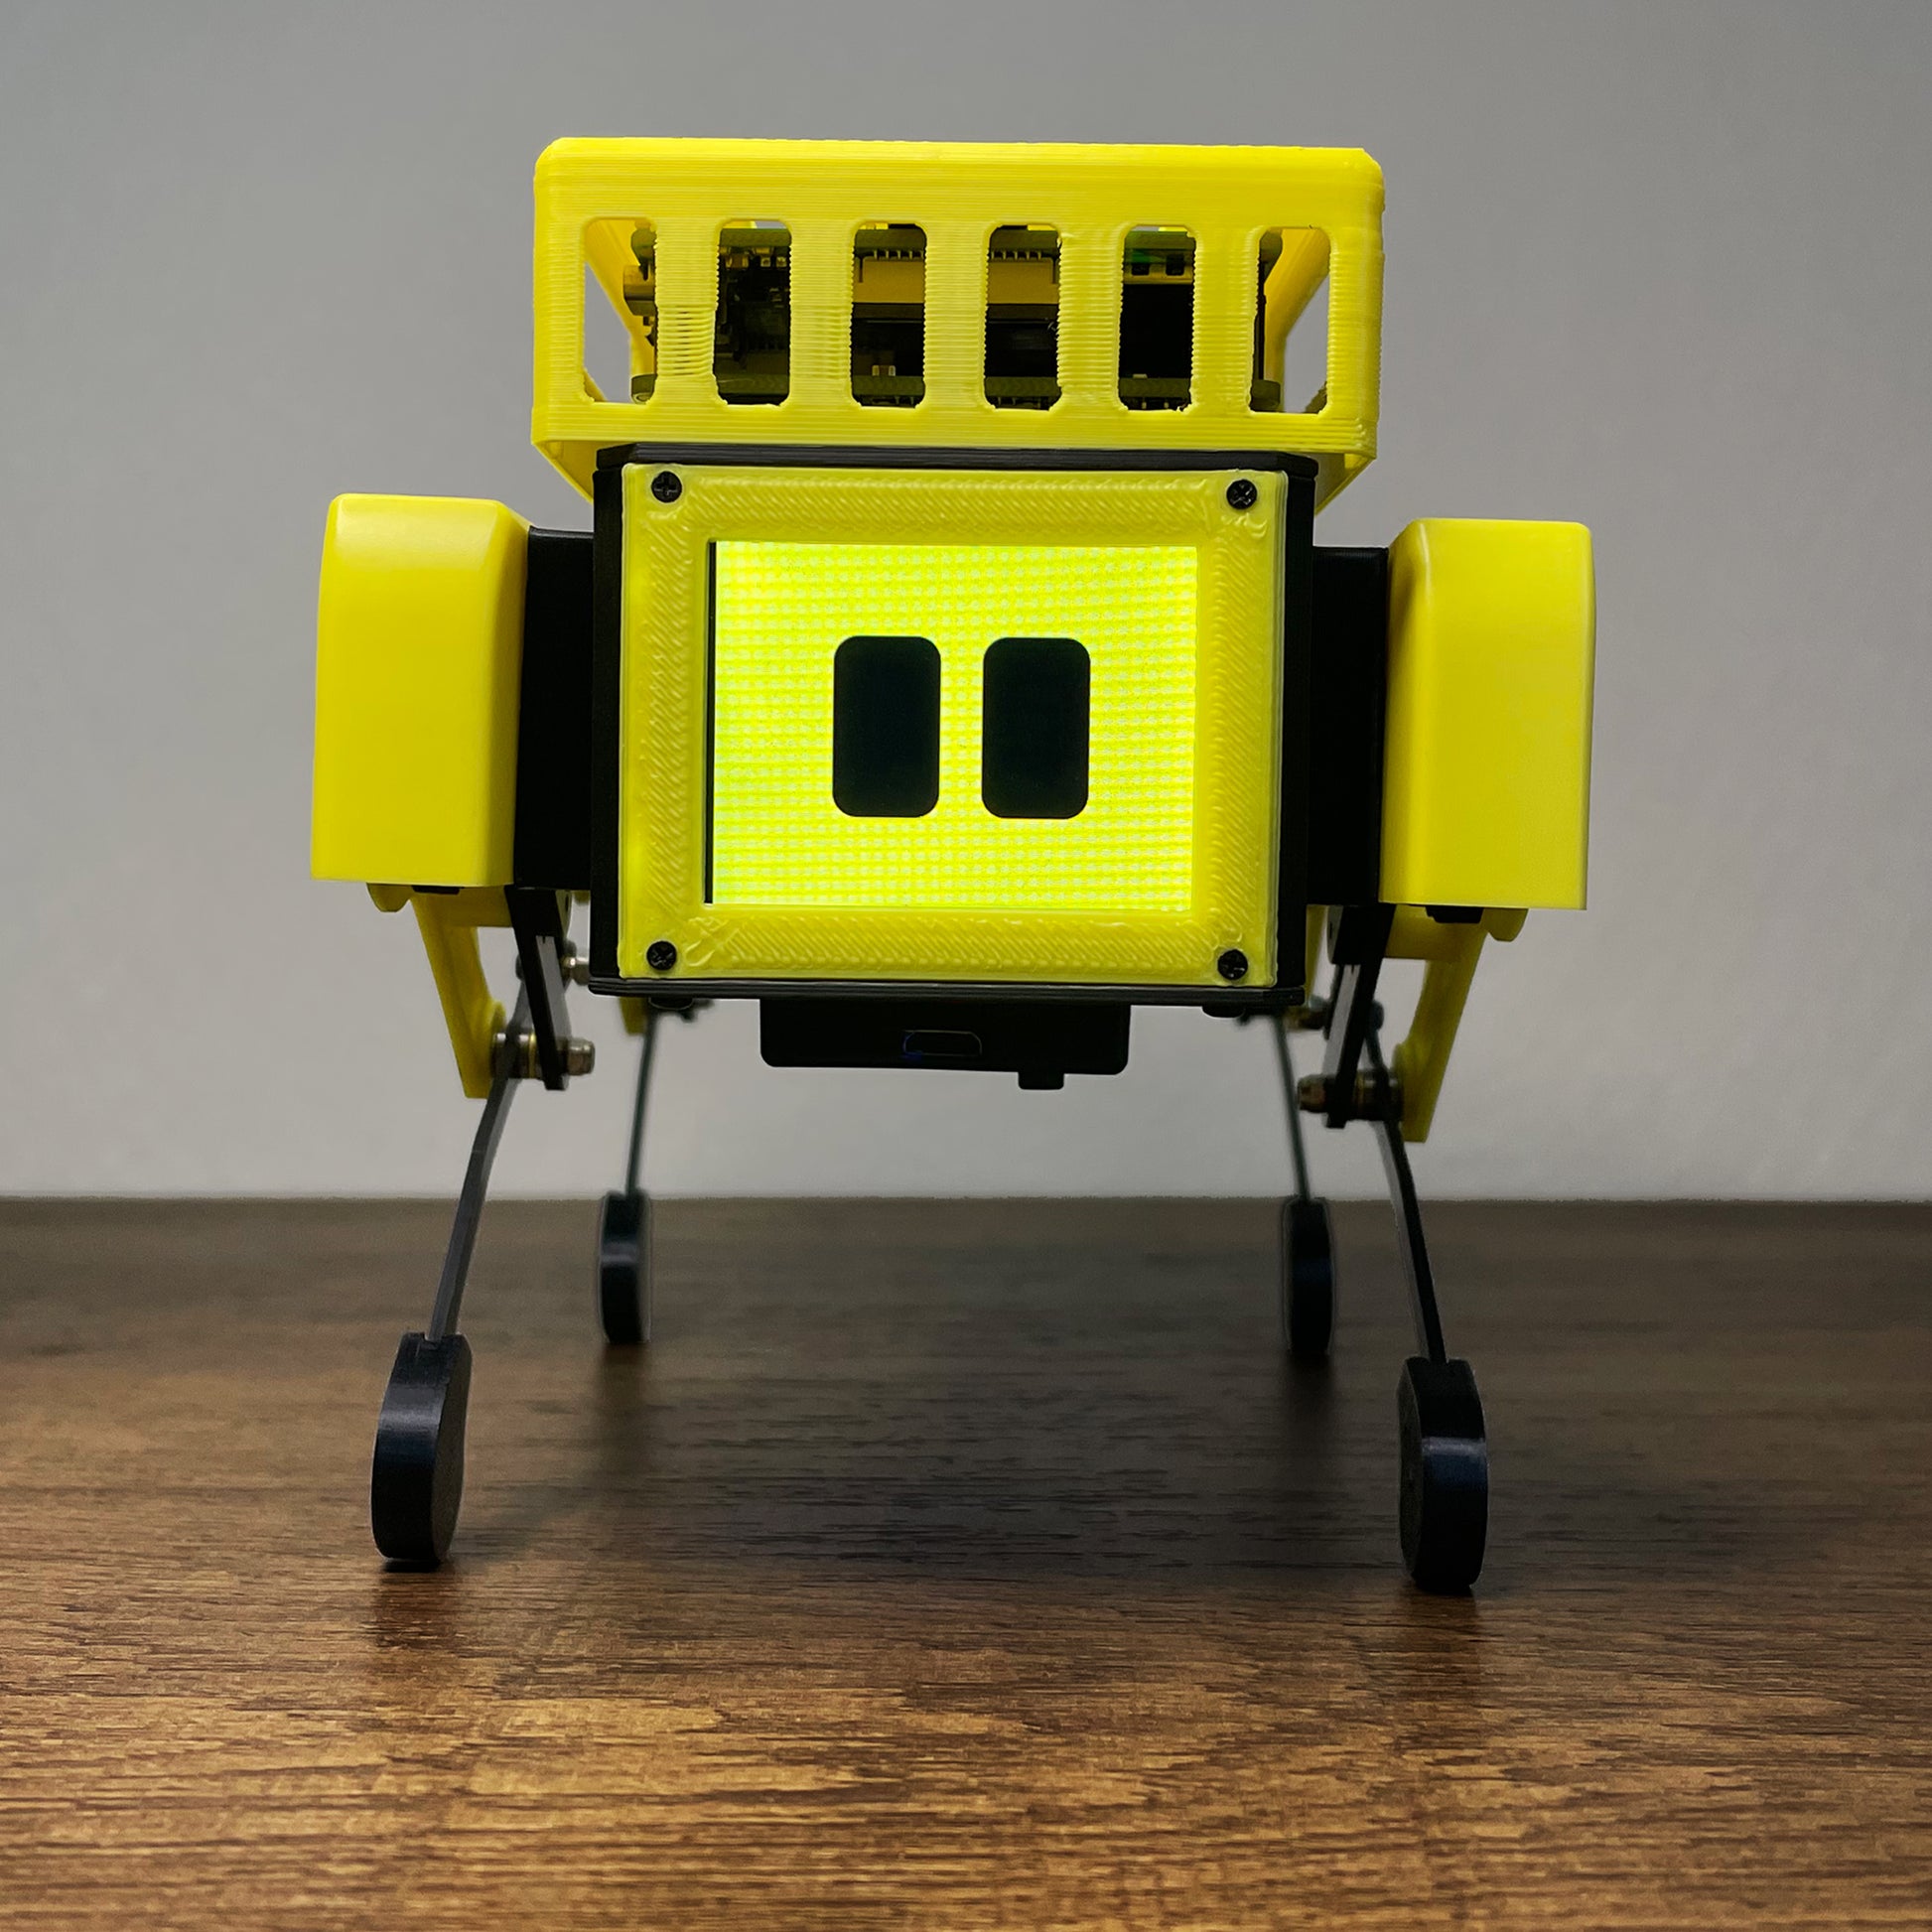 MangDang Mini Pupper: AI Robot, Smart Robot, Quadruped Robot, Educatio